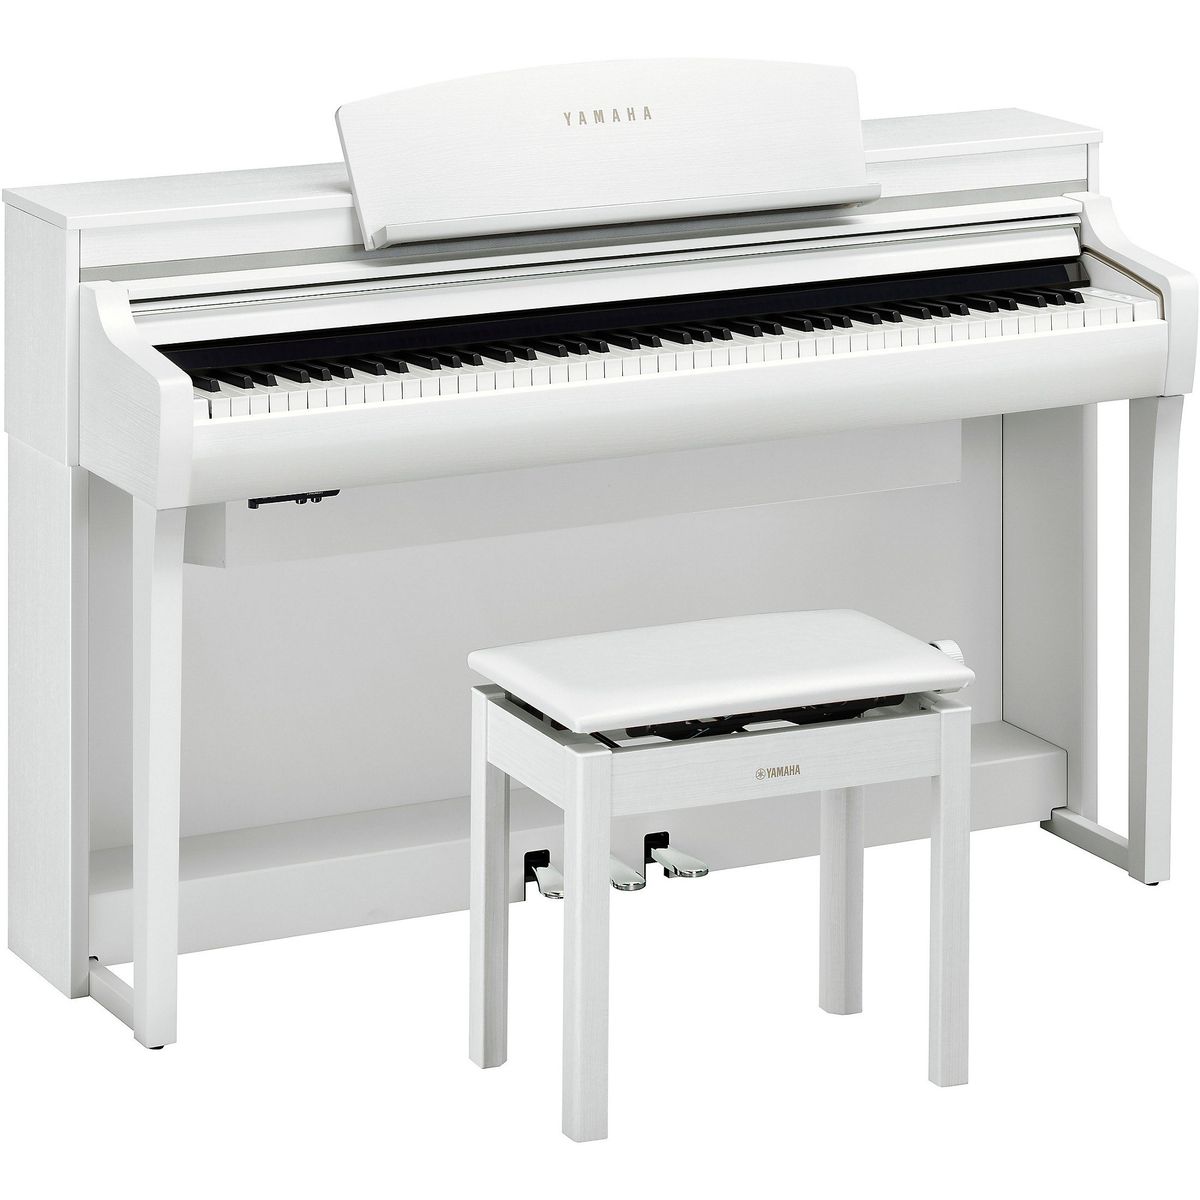 Цифровые пианино Yamaha CSP-275WH arduino полный учебный курс от игры к инженерному проекту 2 е издание исправленное салахов а а